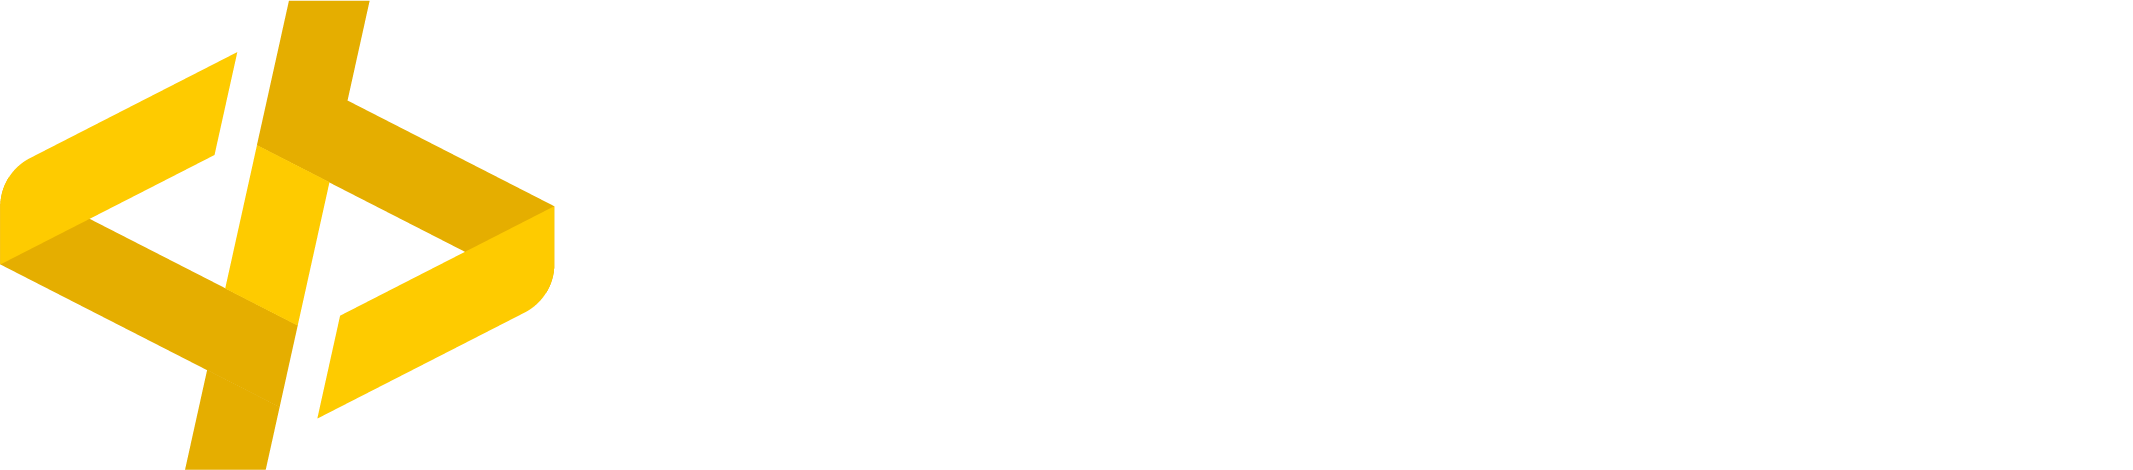 Logo Webtech Solutions transparent white